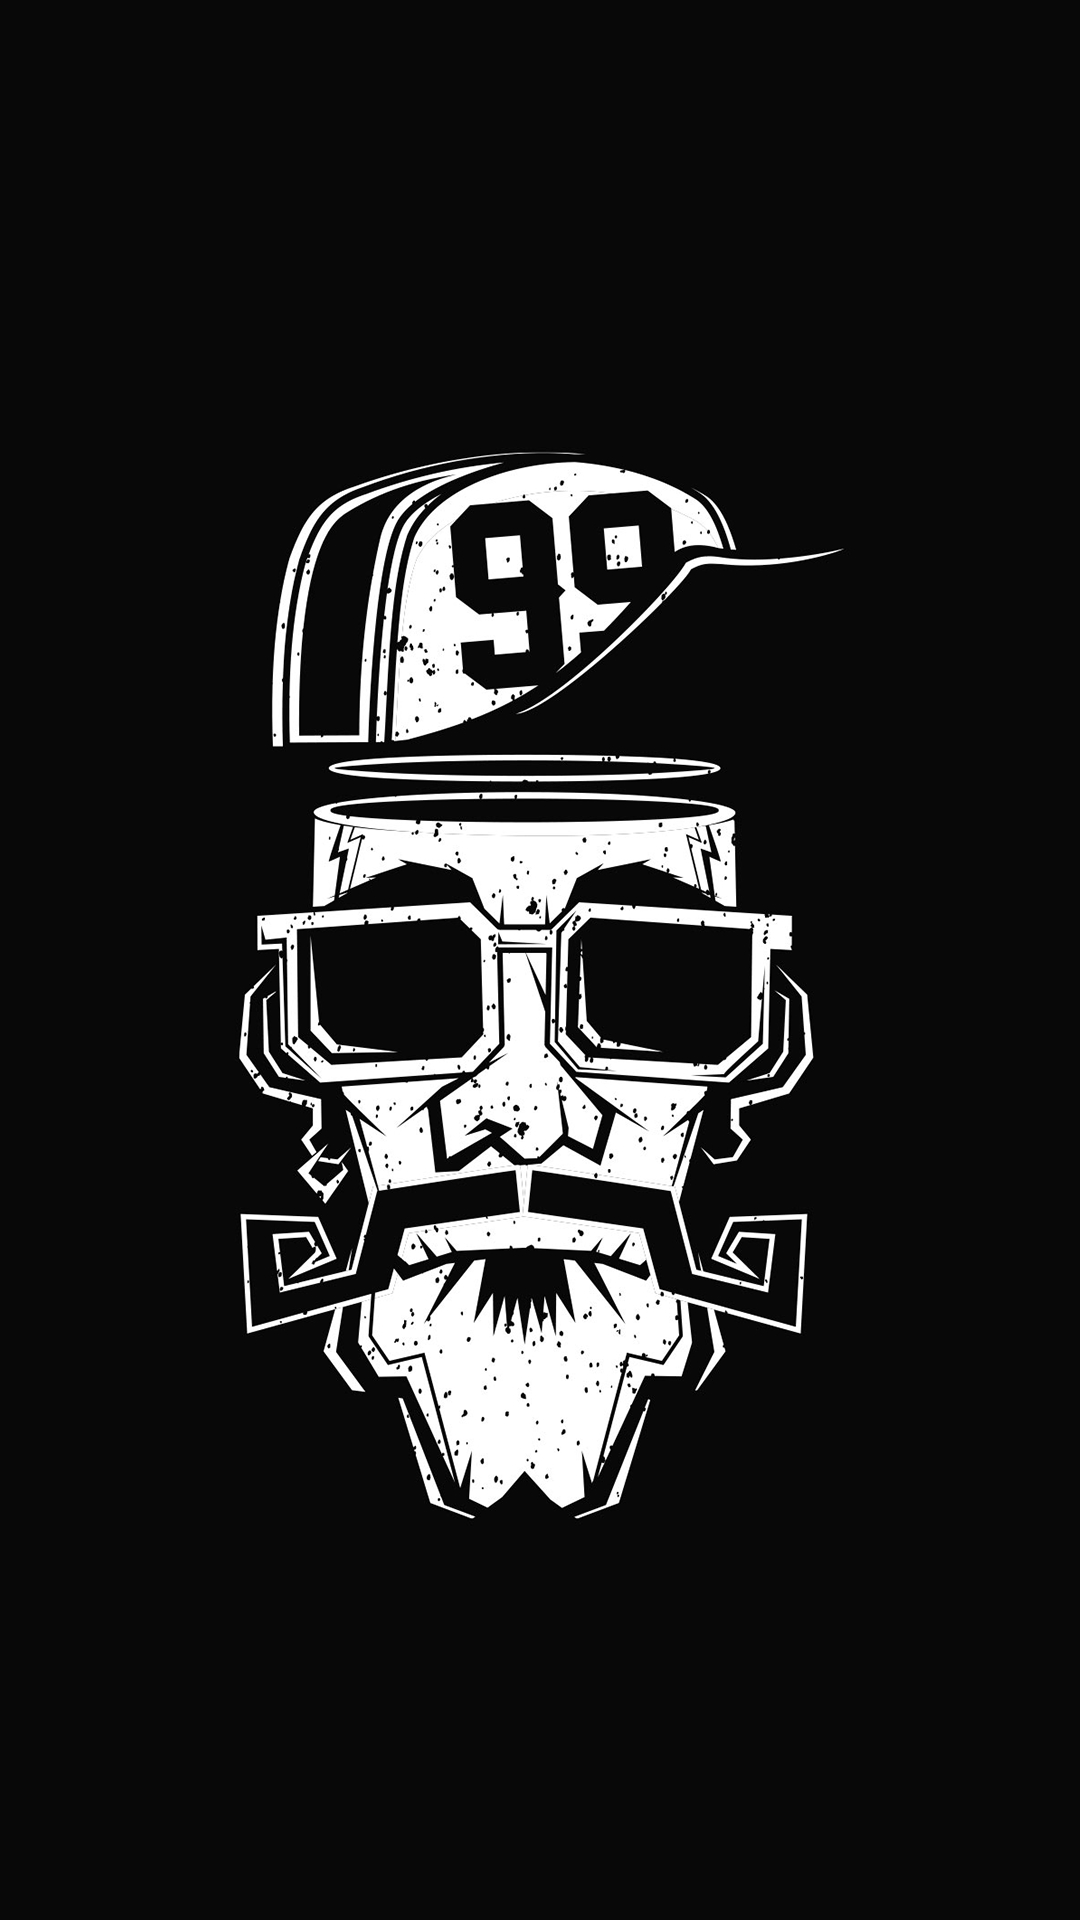 thug life wallpaper iphone,illustration,t shirt,logo,font,eyewear